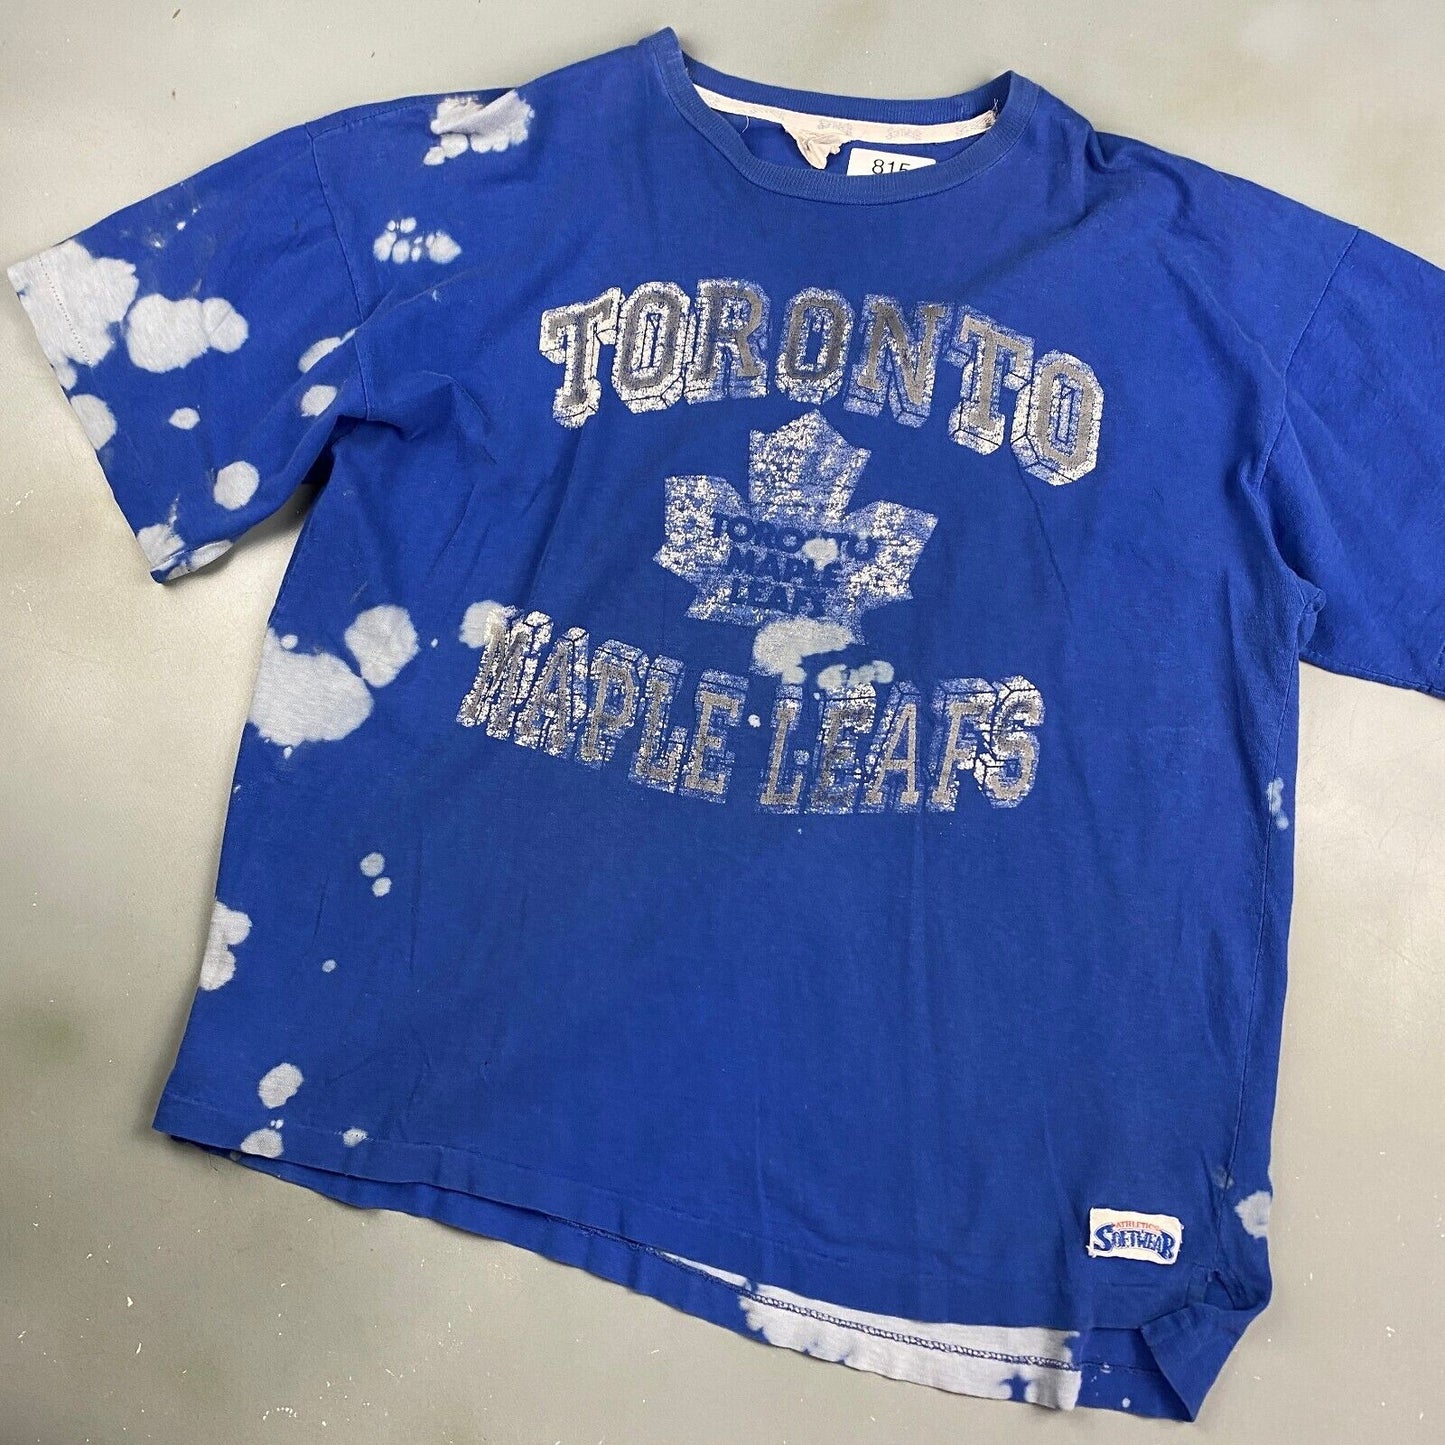 Vintage 90s Toronto Maple Leafs Blue T-Shirt sz Large Men Adult